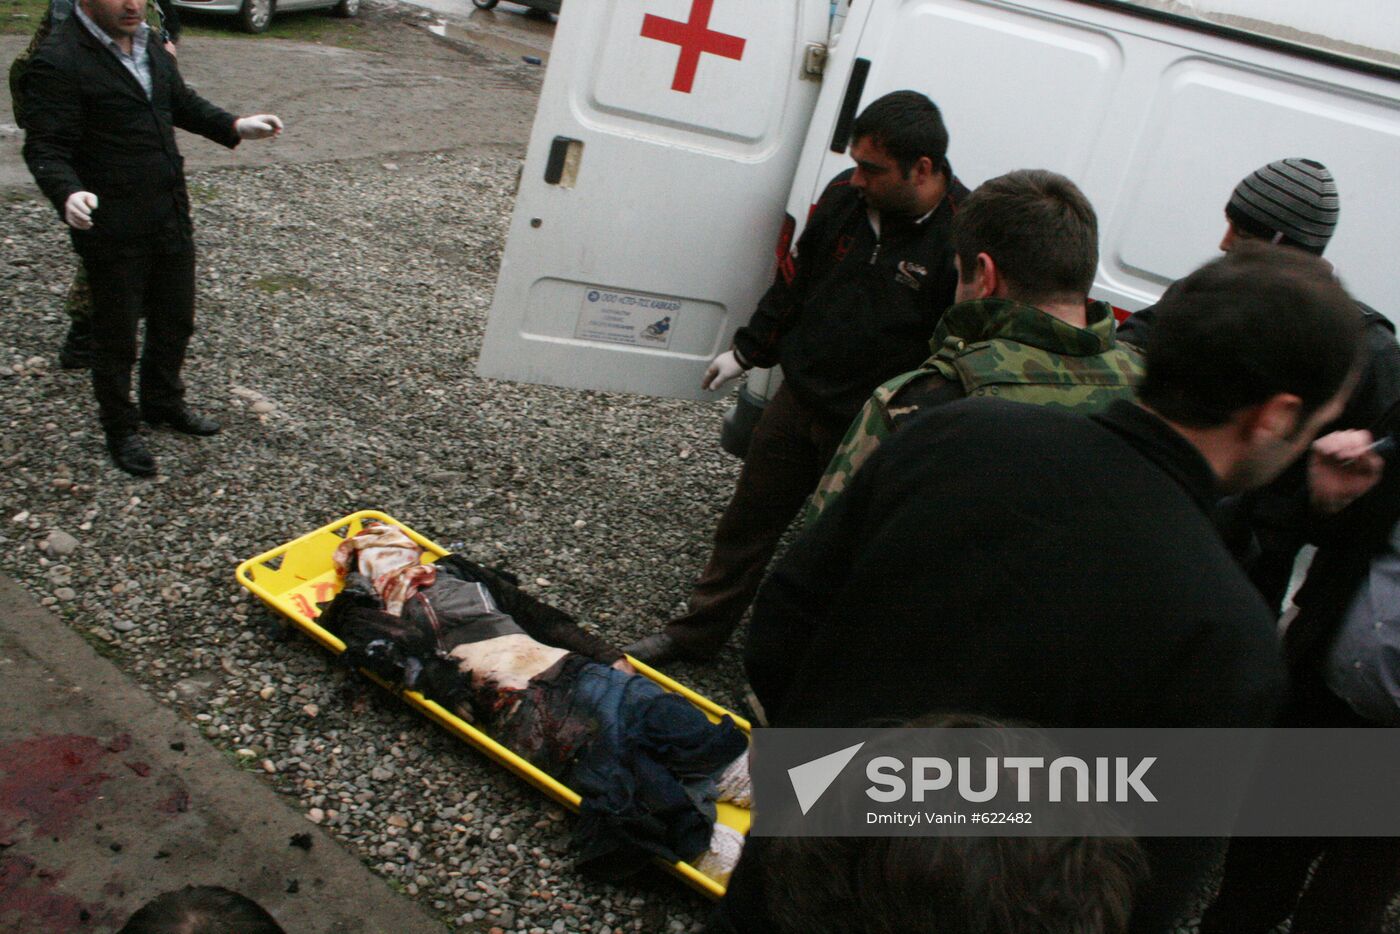 Suicide bomber blows up herself in Ekazhevo village